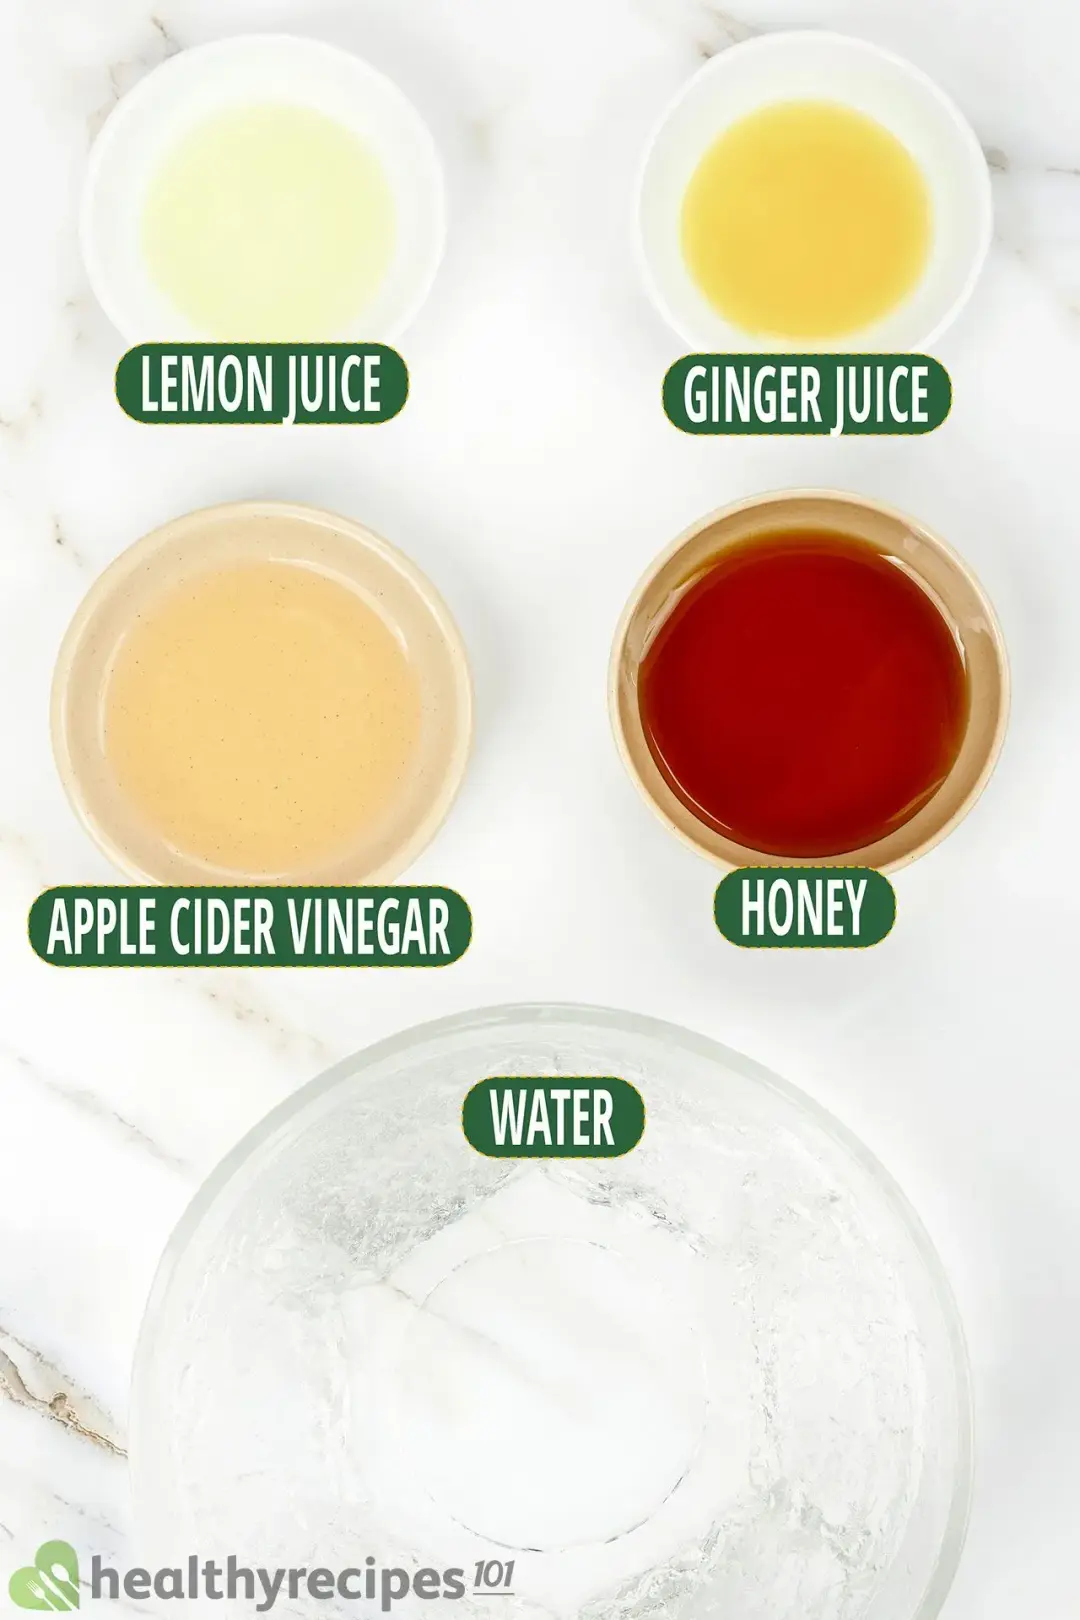 Ingredients in separate bowls: lemon juice, ginger juice, apple cider vinegar, honey, water